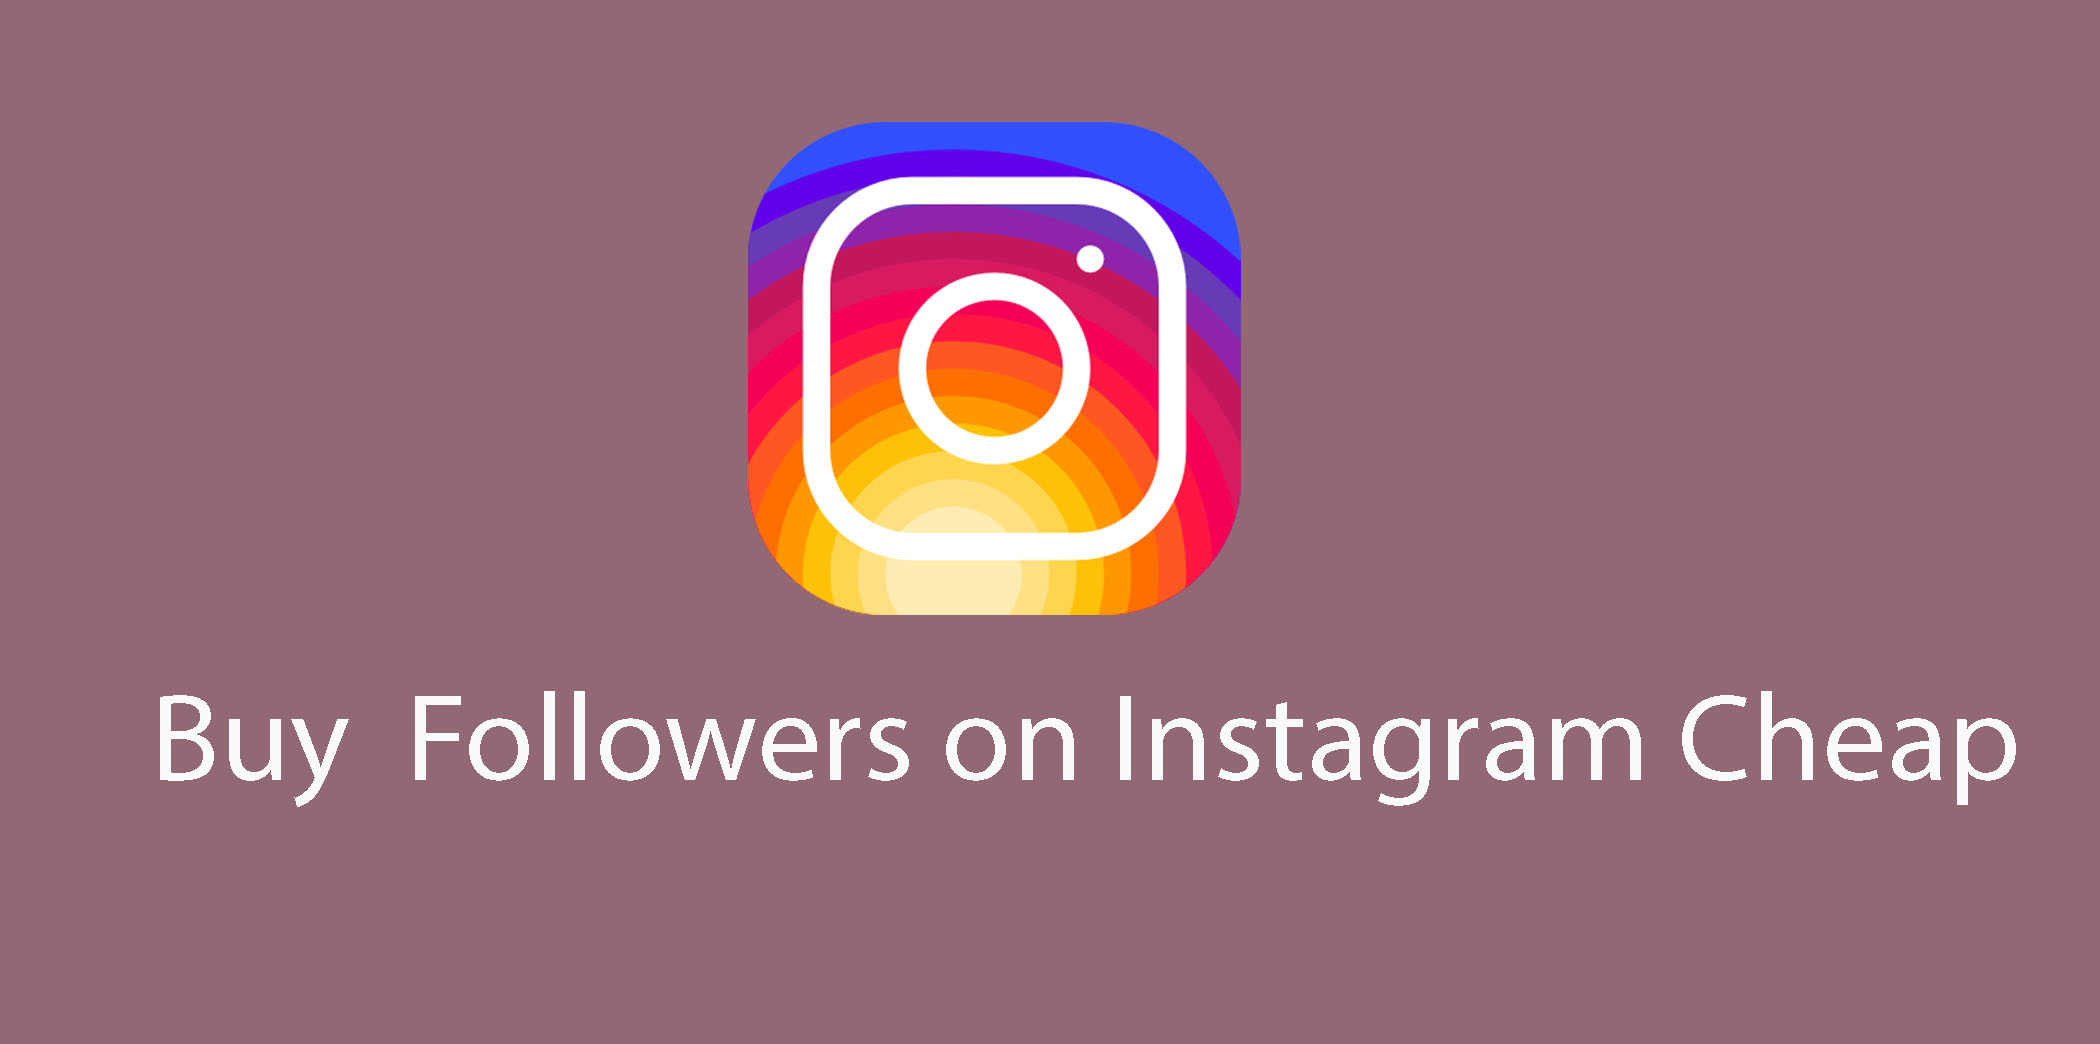 Buy-Instagram-Followers